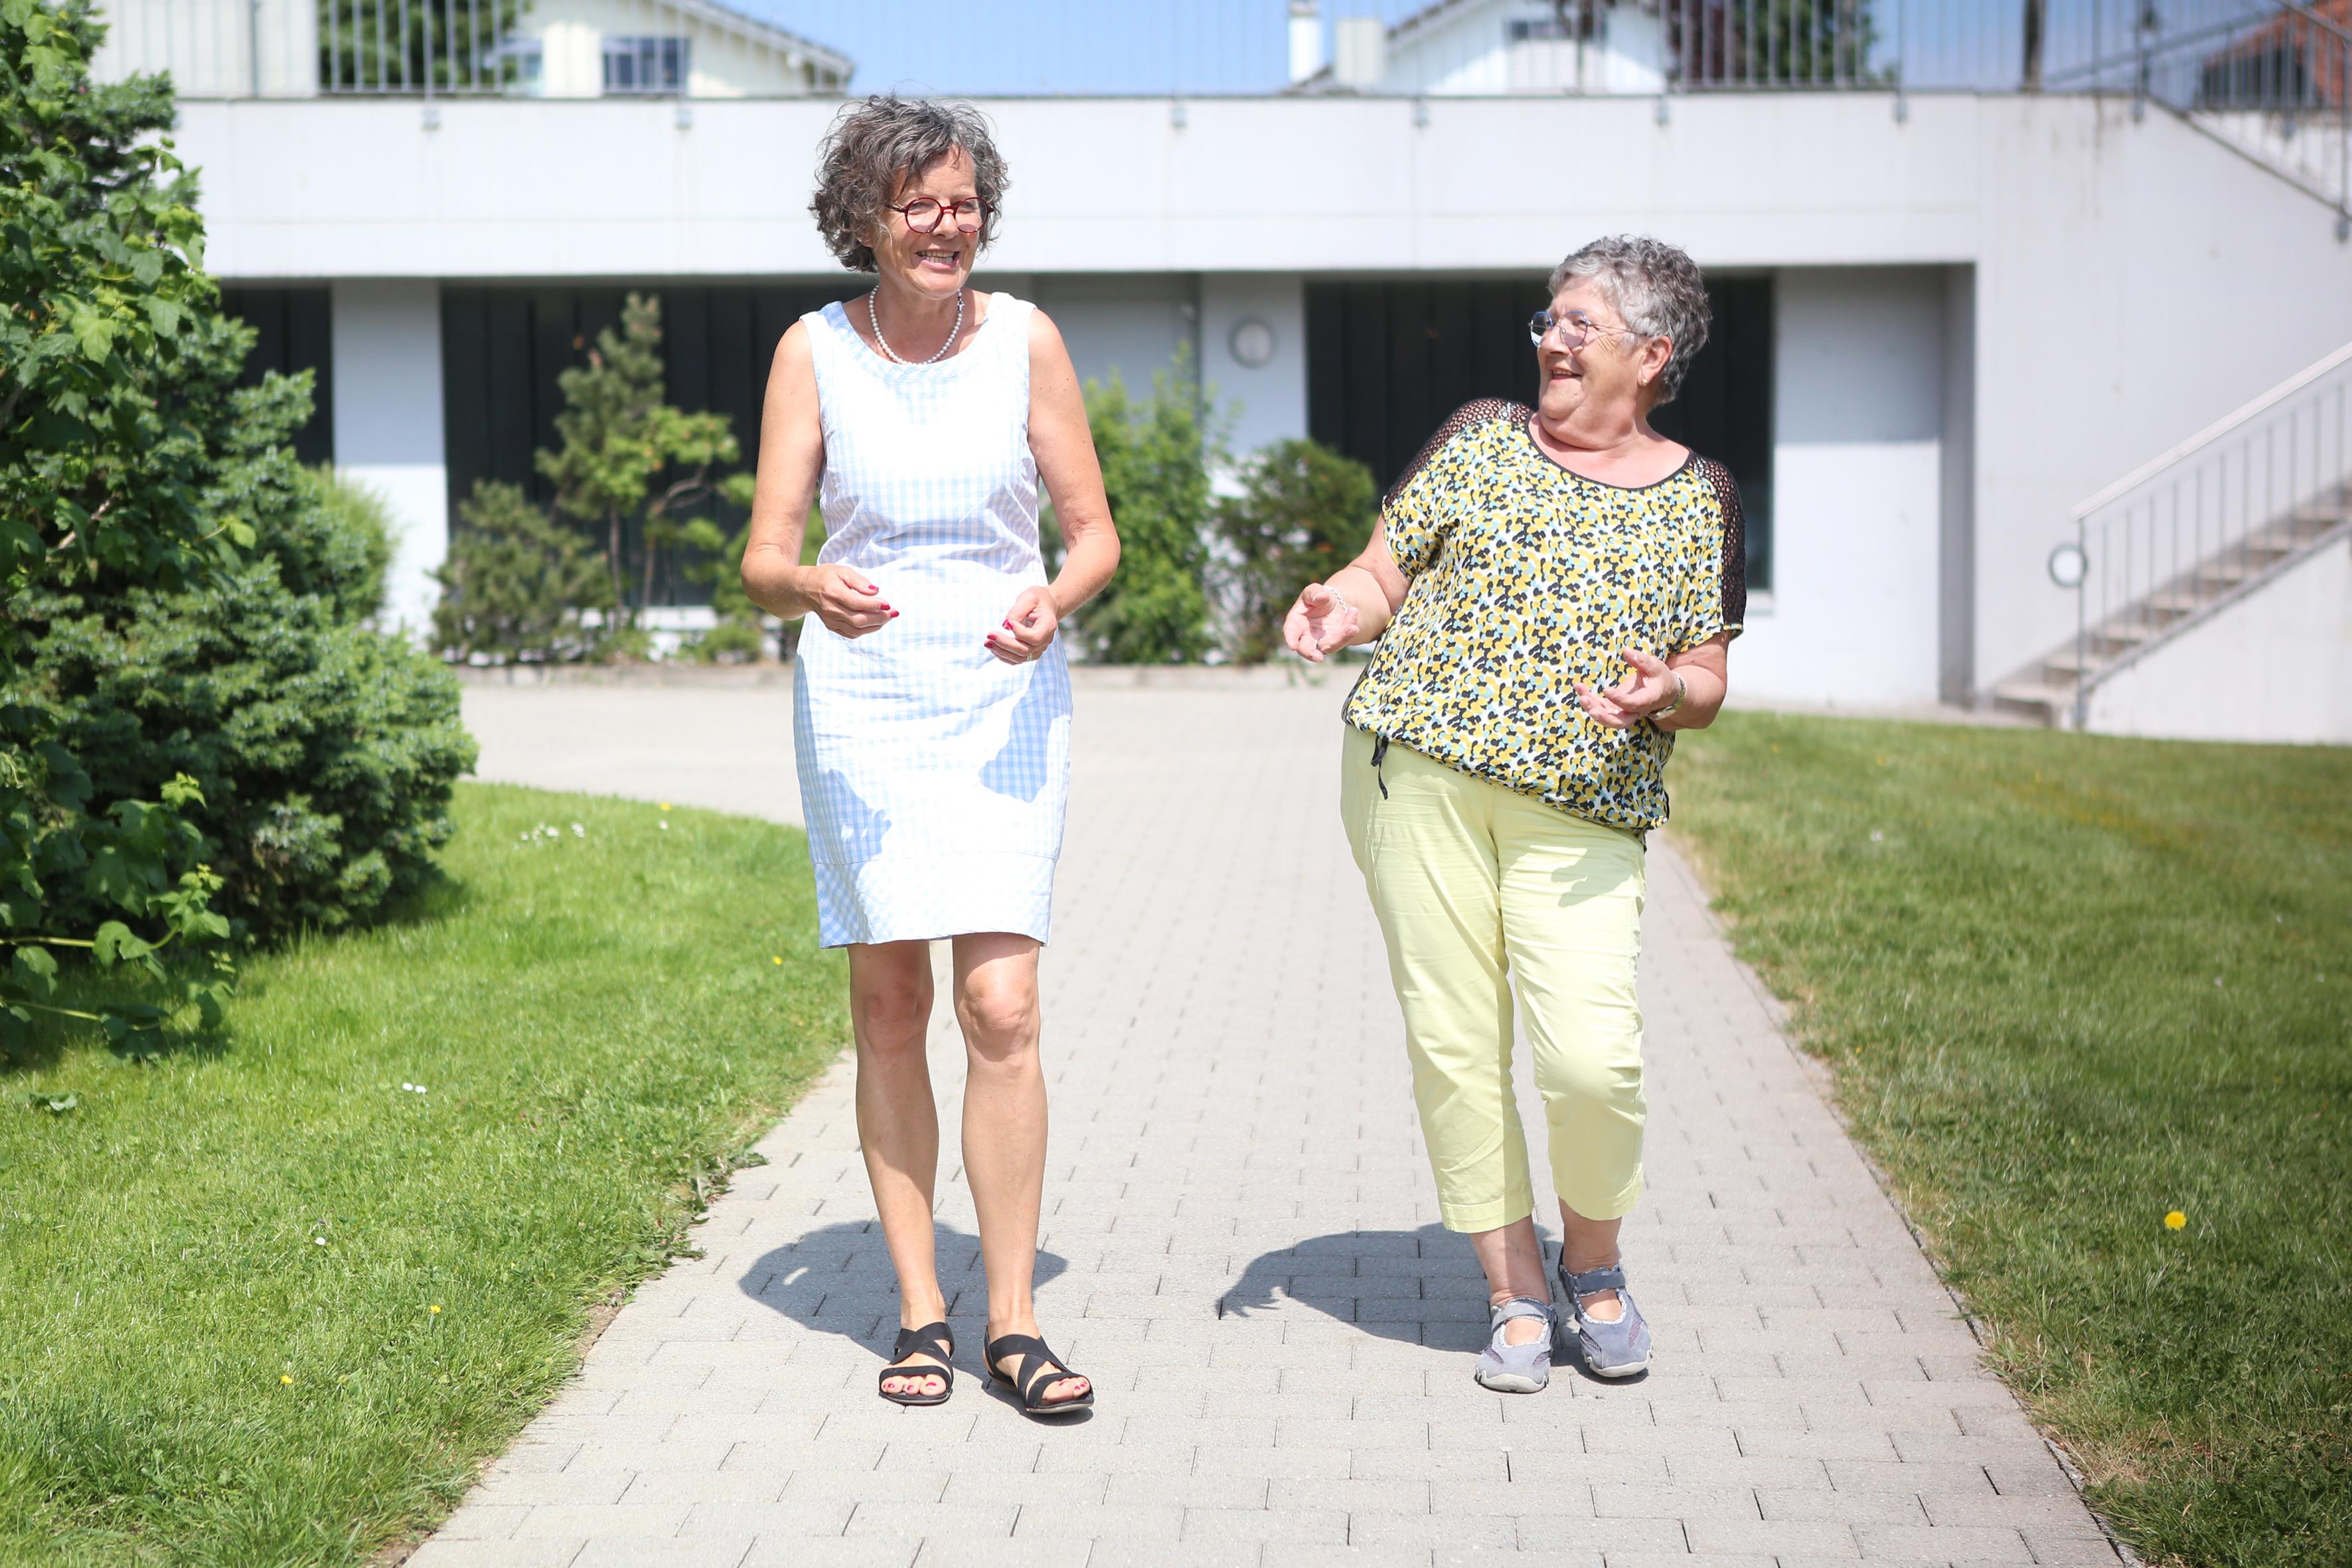 Martine Pipoz und Imelda Morard laufen auf einem Gehweg und unterhalten sich. Beide lachen.  